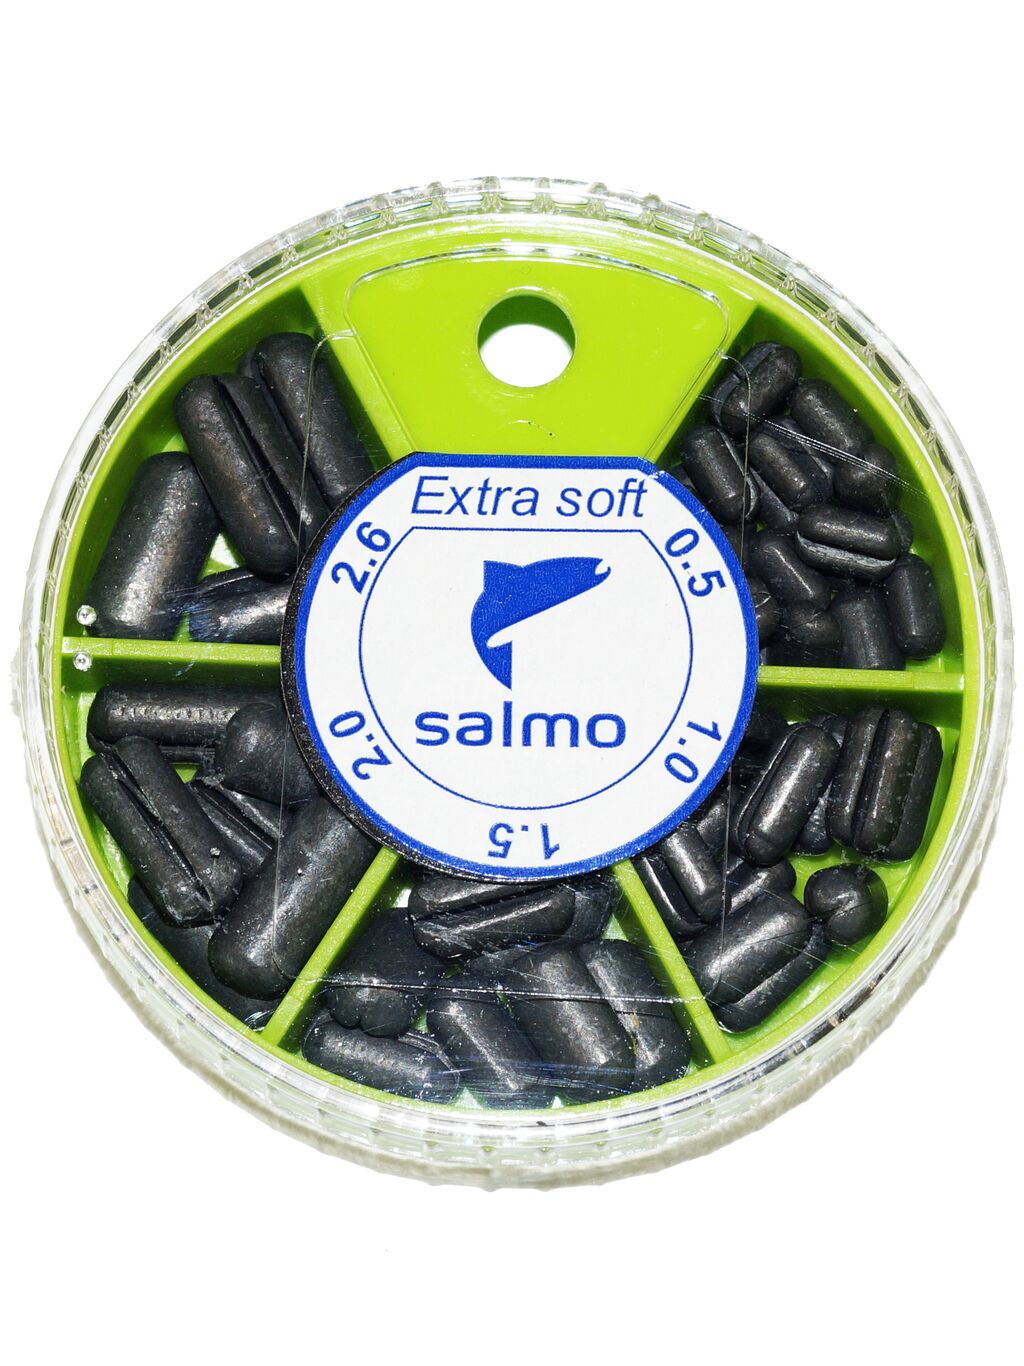 Грузила Salmo EXTRA SOFT малый 5 секц. 0,5-2,6г 060г набор 2